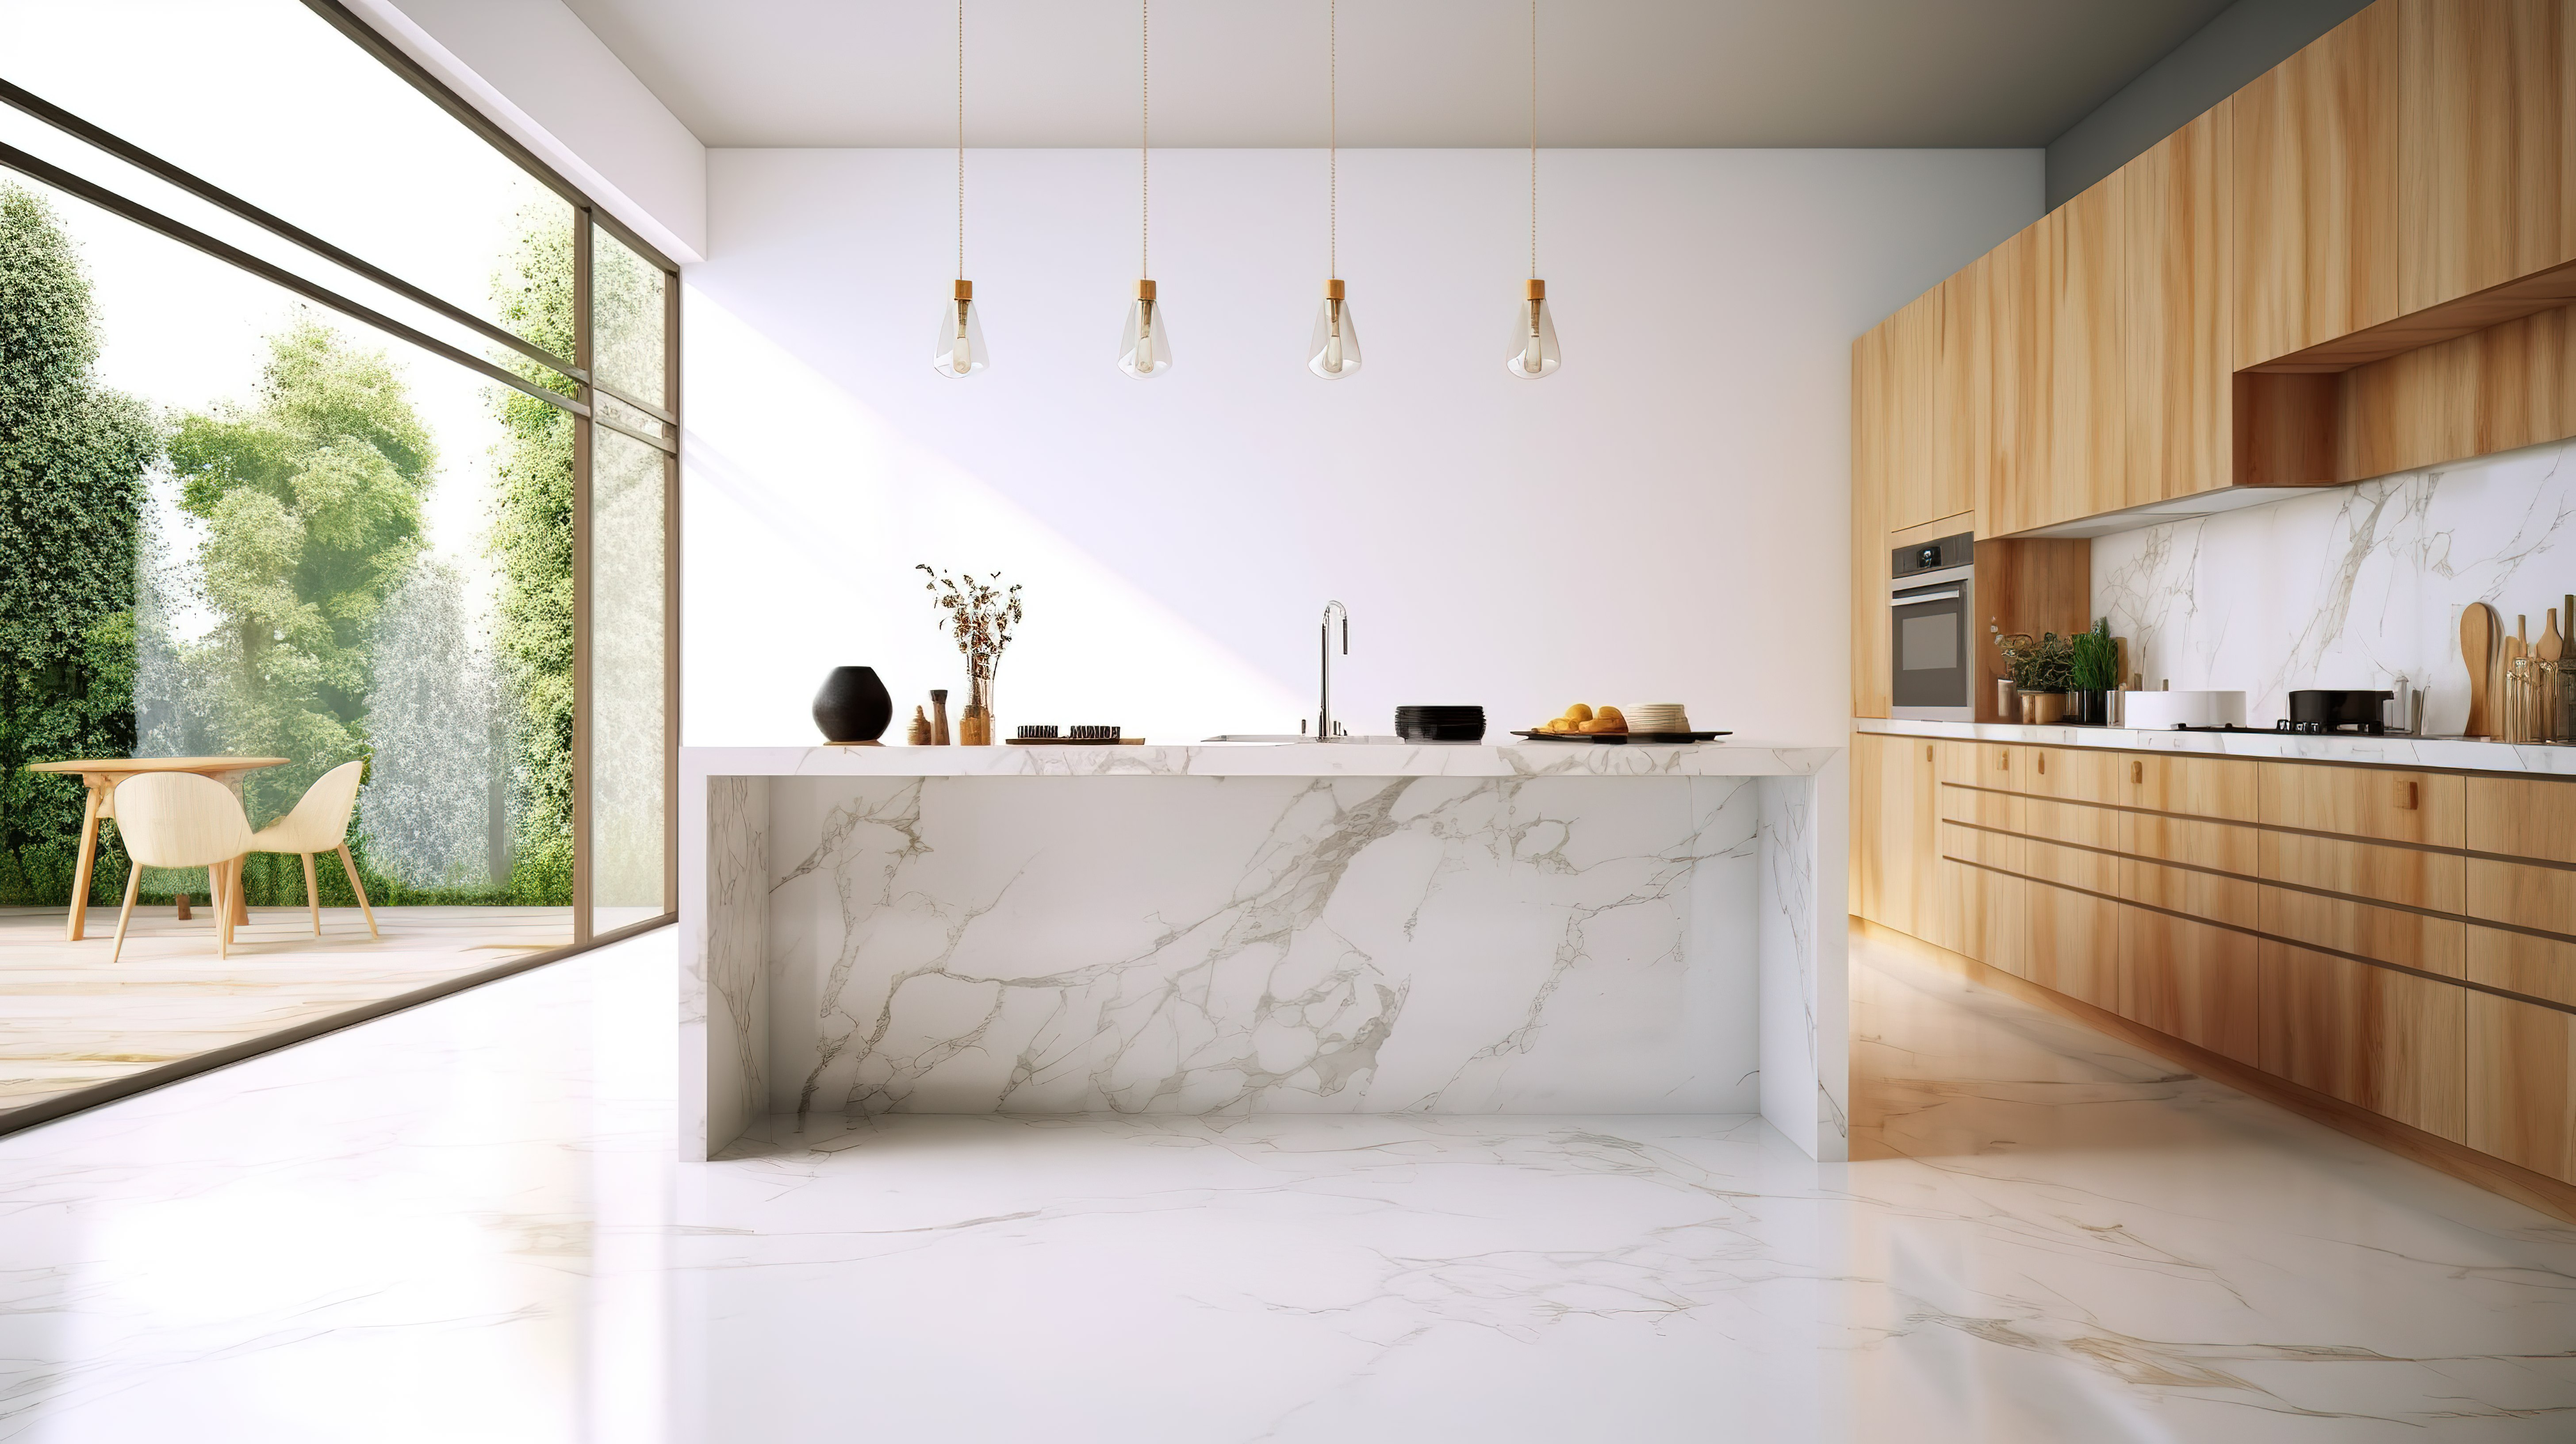 浅色和木质厨房中大理石厨房岛柜台的 3D 渲染图片